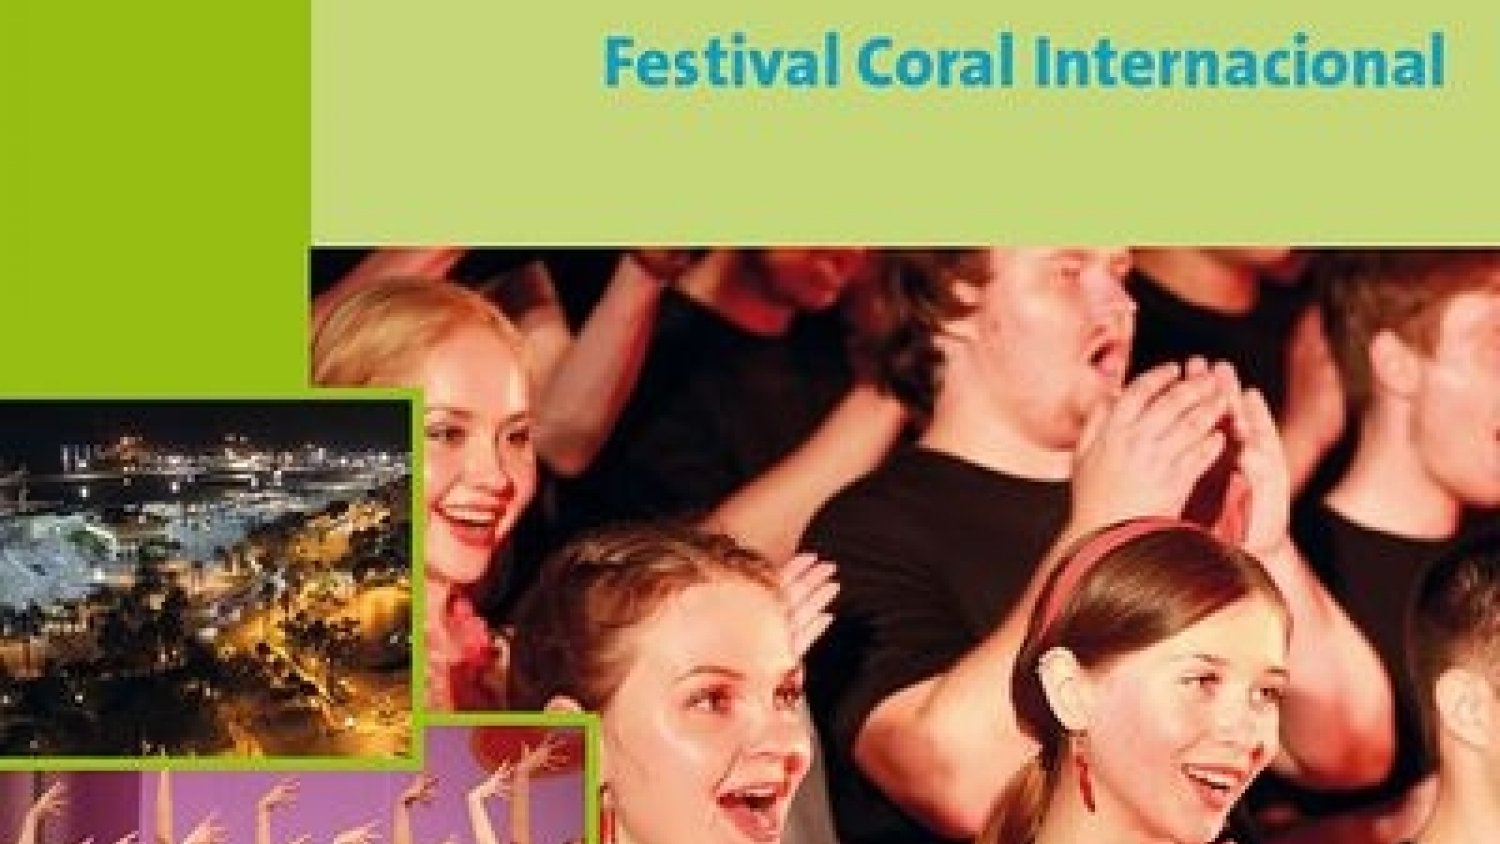 Corales y agrupaciones musicales de 8 países se dan cita desde hoy en Málaga para su III Festival Internacional